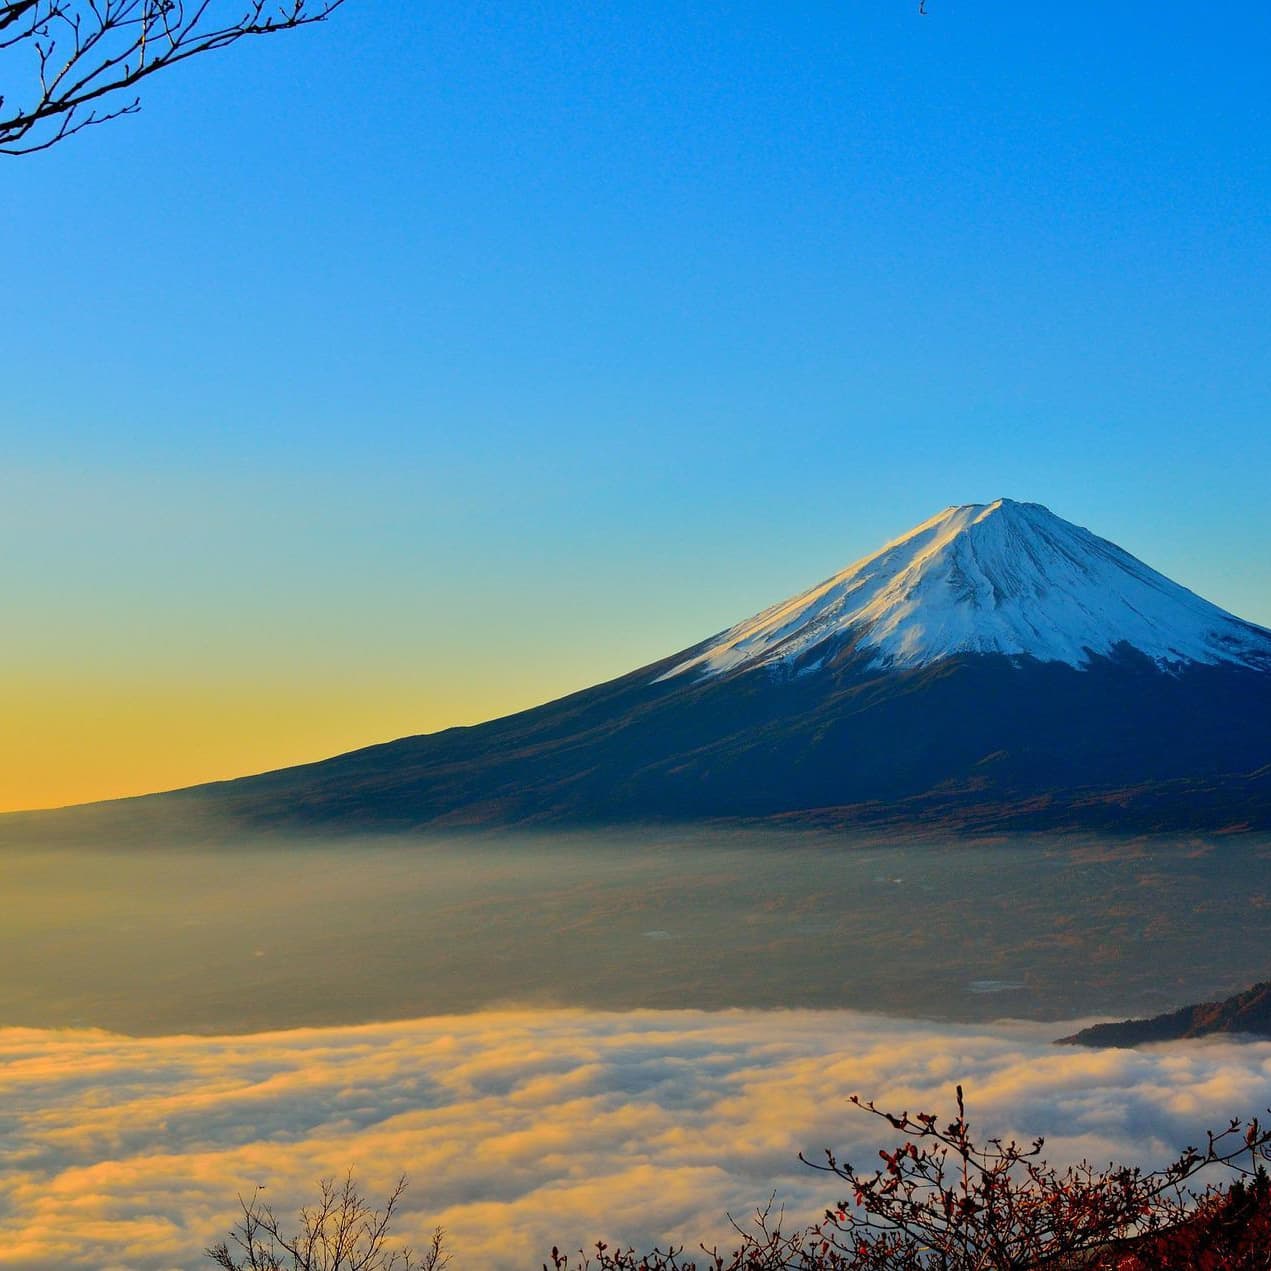 大幸ツアーのまなたび俱楽部で富士山へ行こう